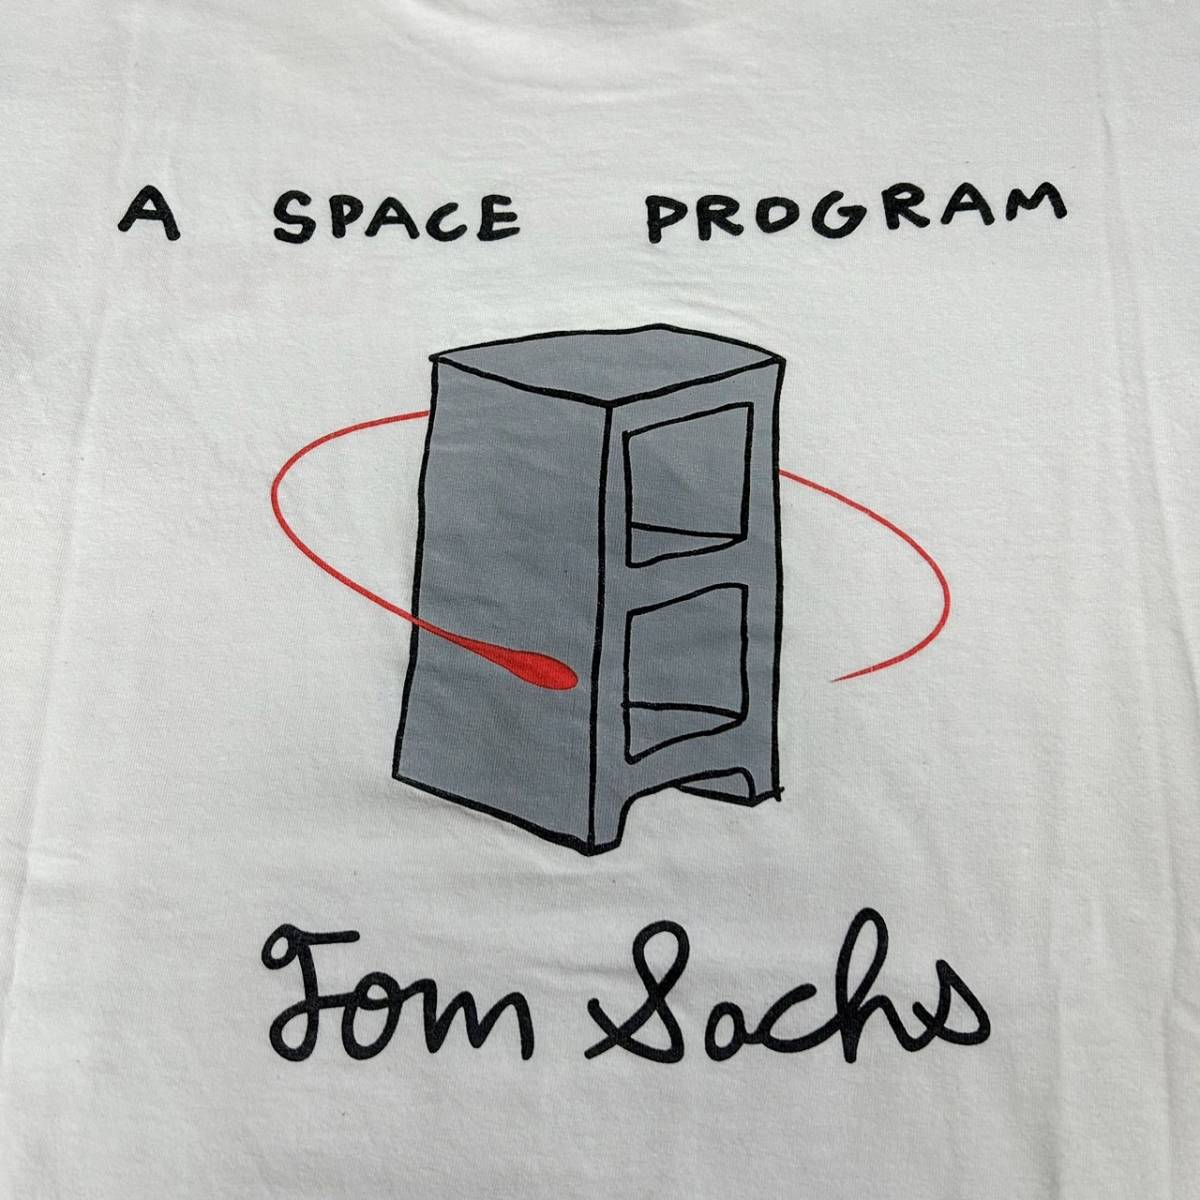 貴重 Tom Sachs A SPACE PROGRAM NASA FRUIT OF THE LOOM トムサックス フルーツオブザルーム  スペースプログラム プリント Tシャツ 白 XL